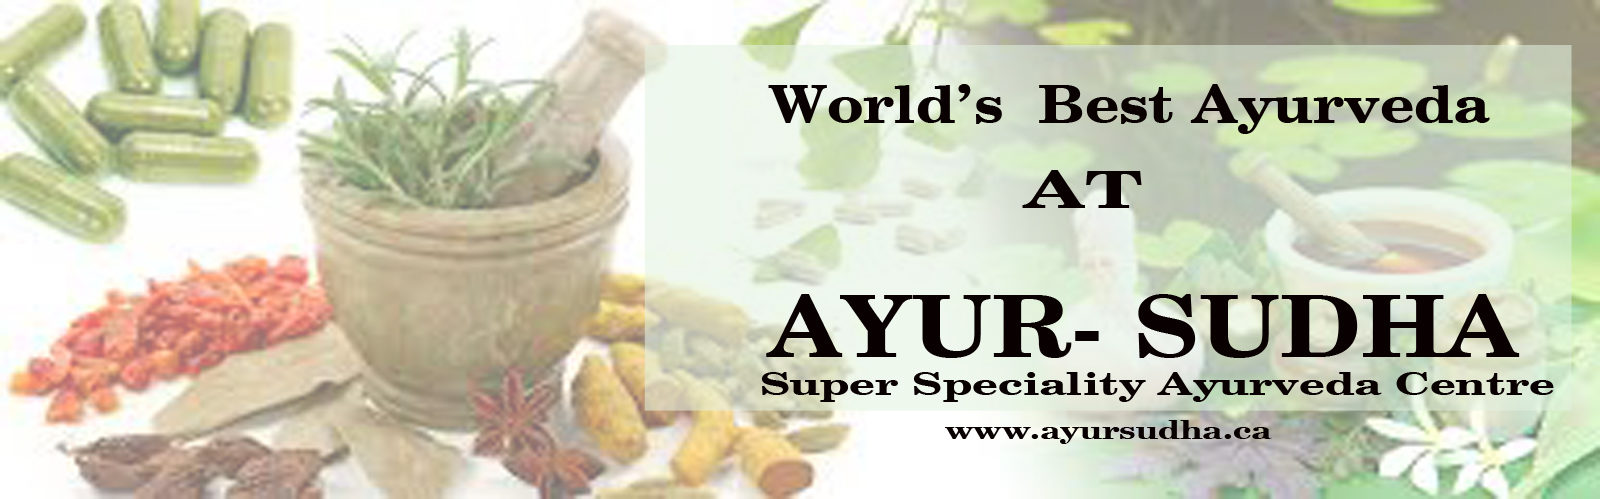 Best Ayurveda Skin Treatment in Brampton, Toronto Canada. Ayur-Sudha Ayurvedic Clinic.